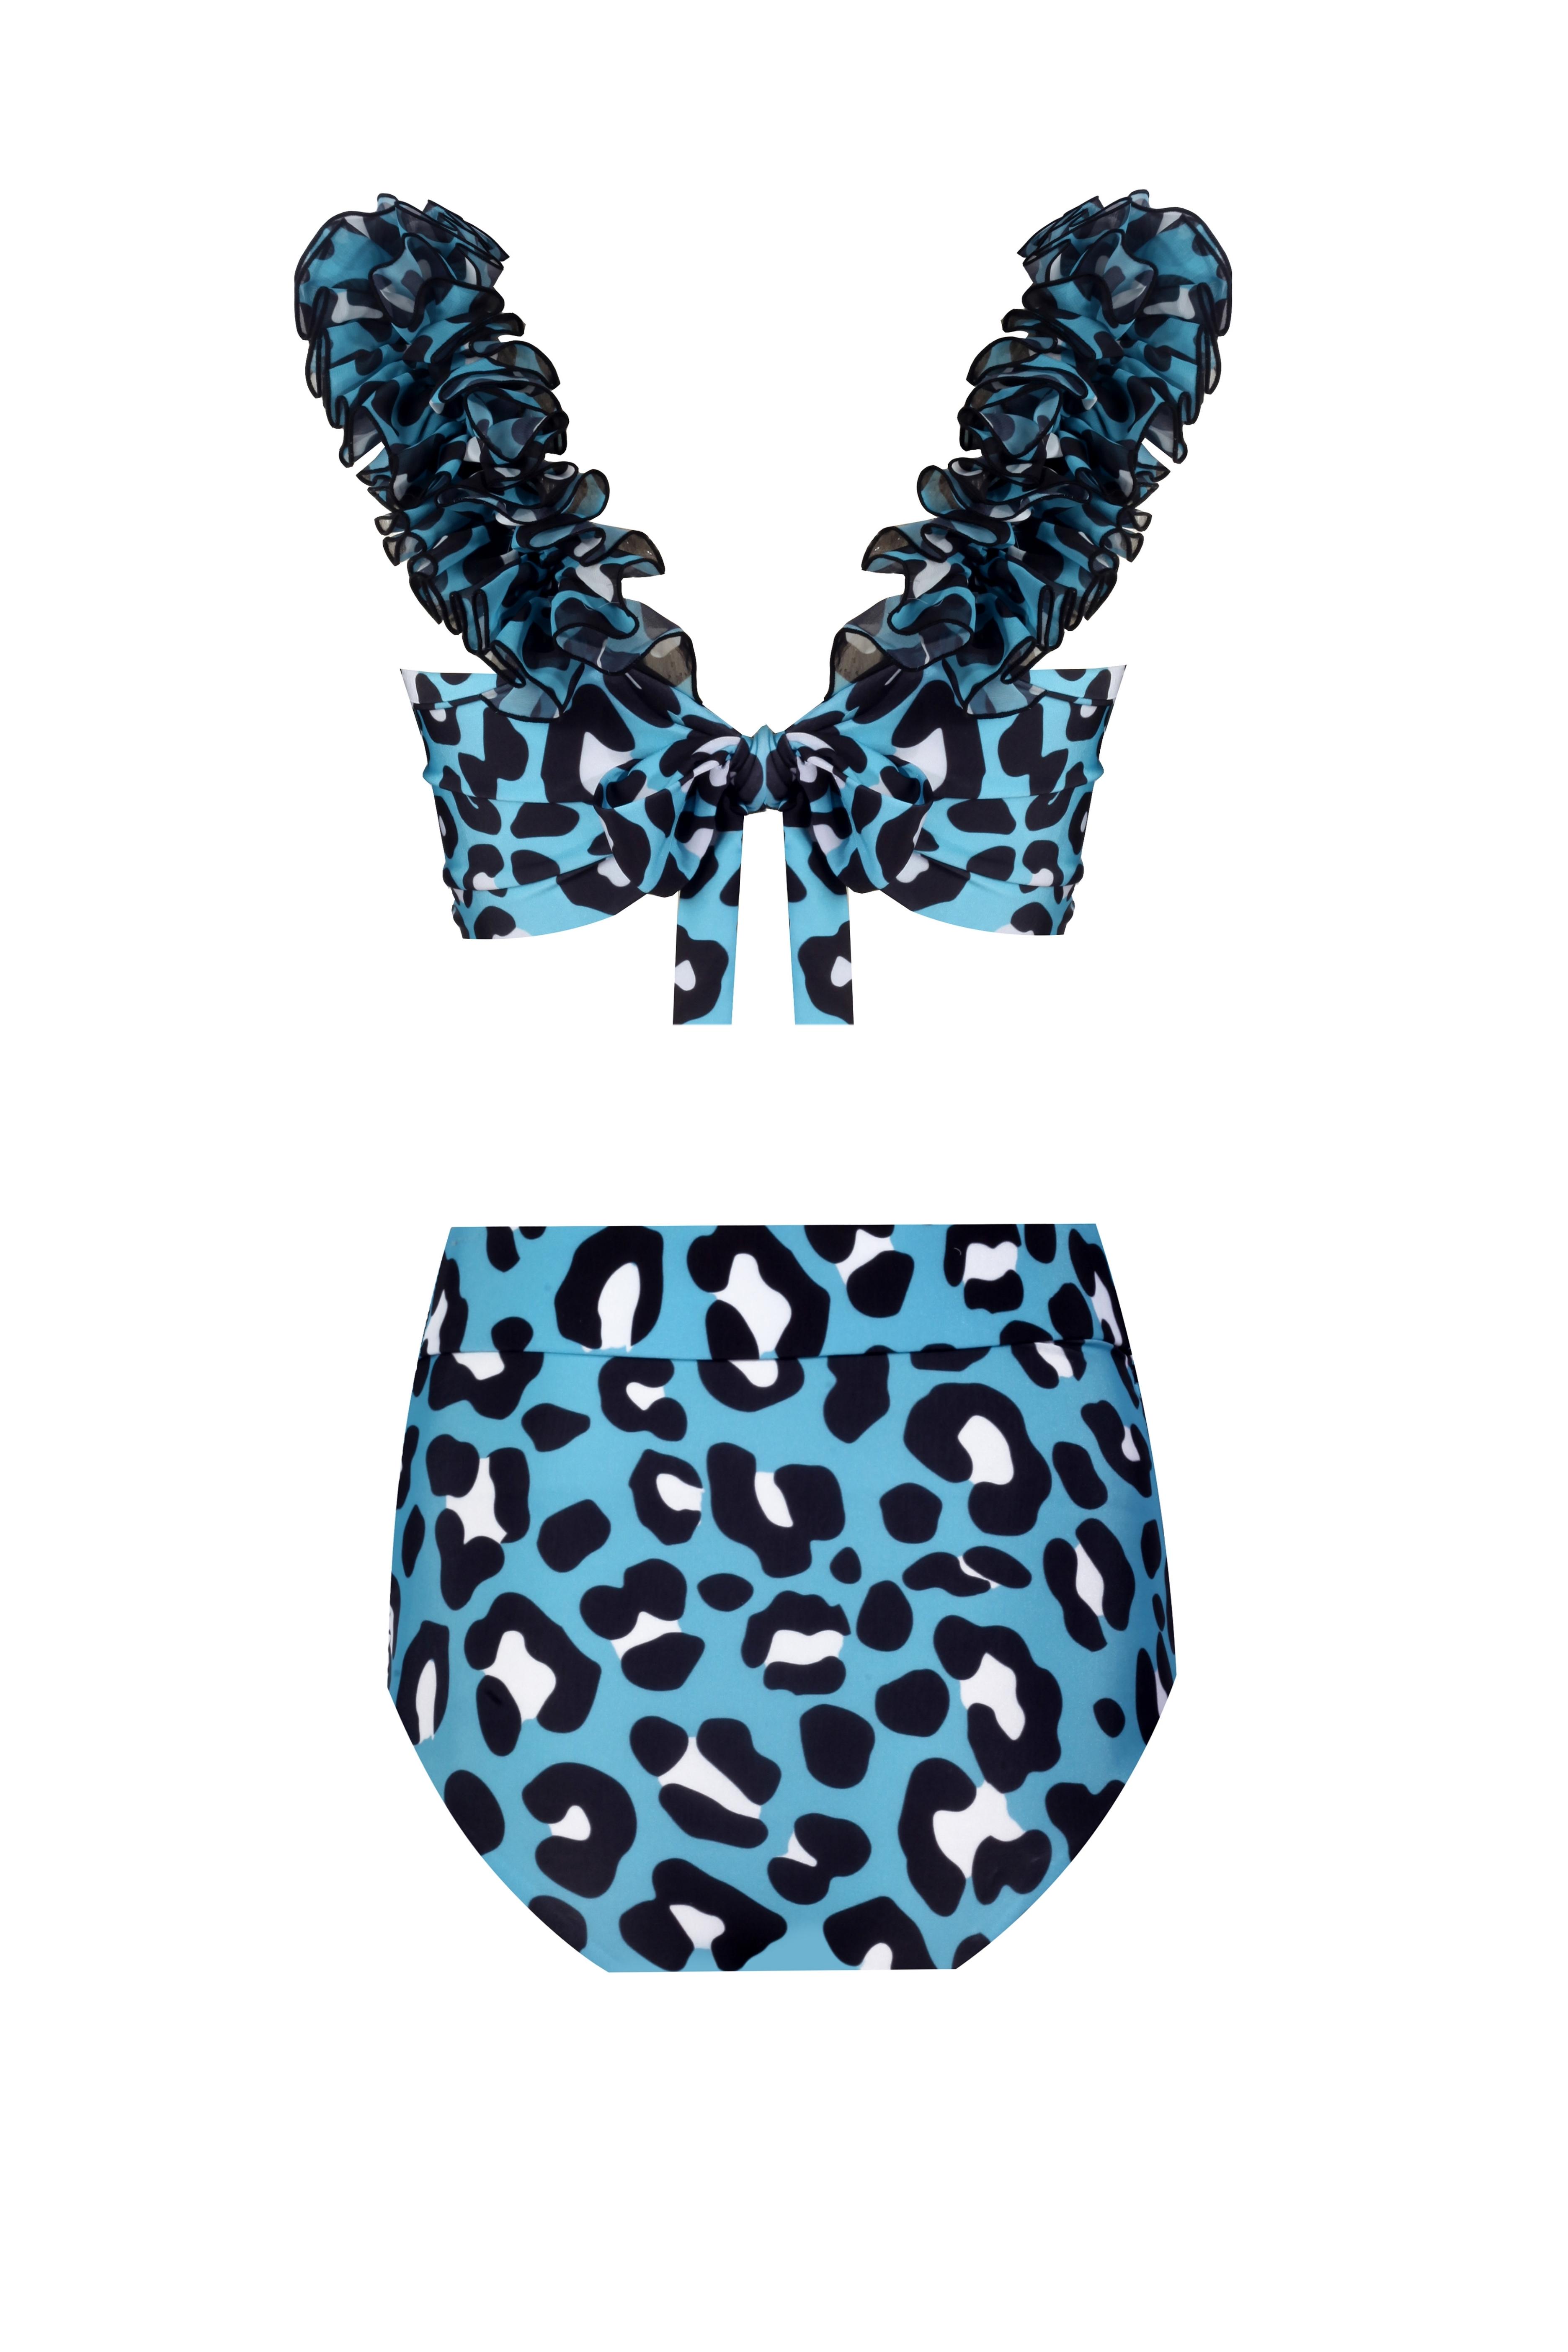 Lily Blue Leo Bikini Set